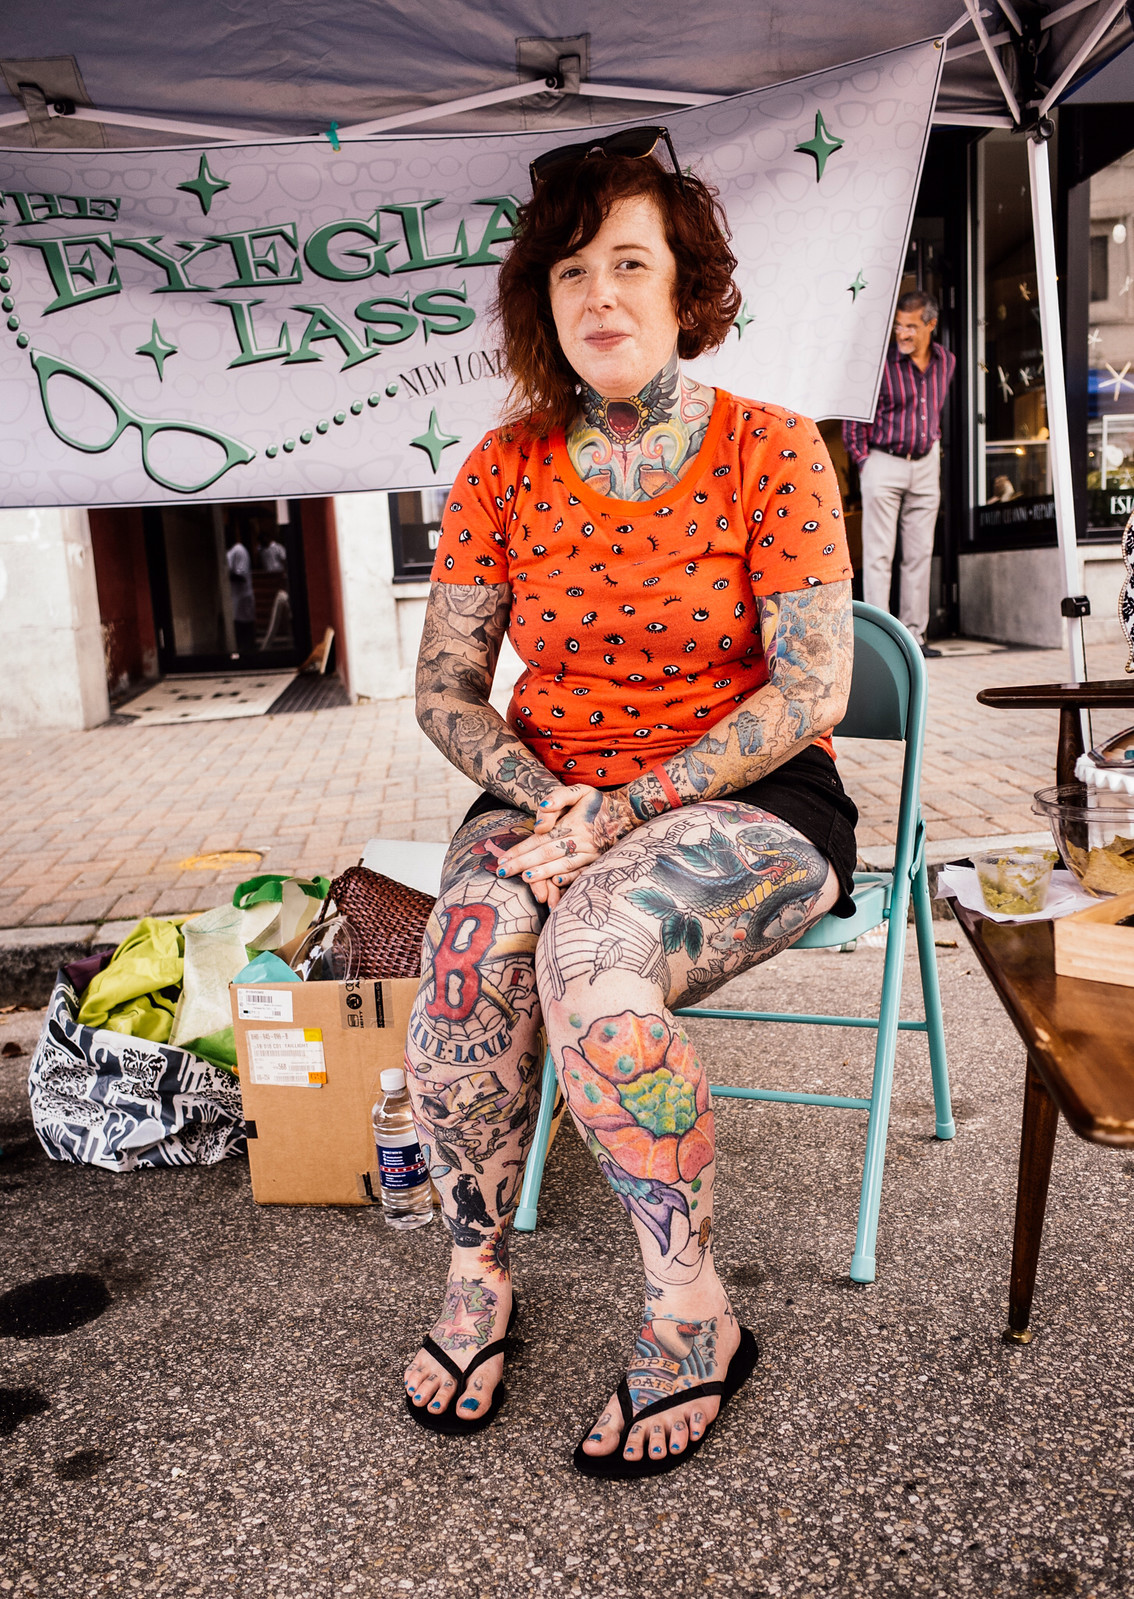 heavily tattooed women 2.